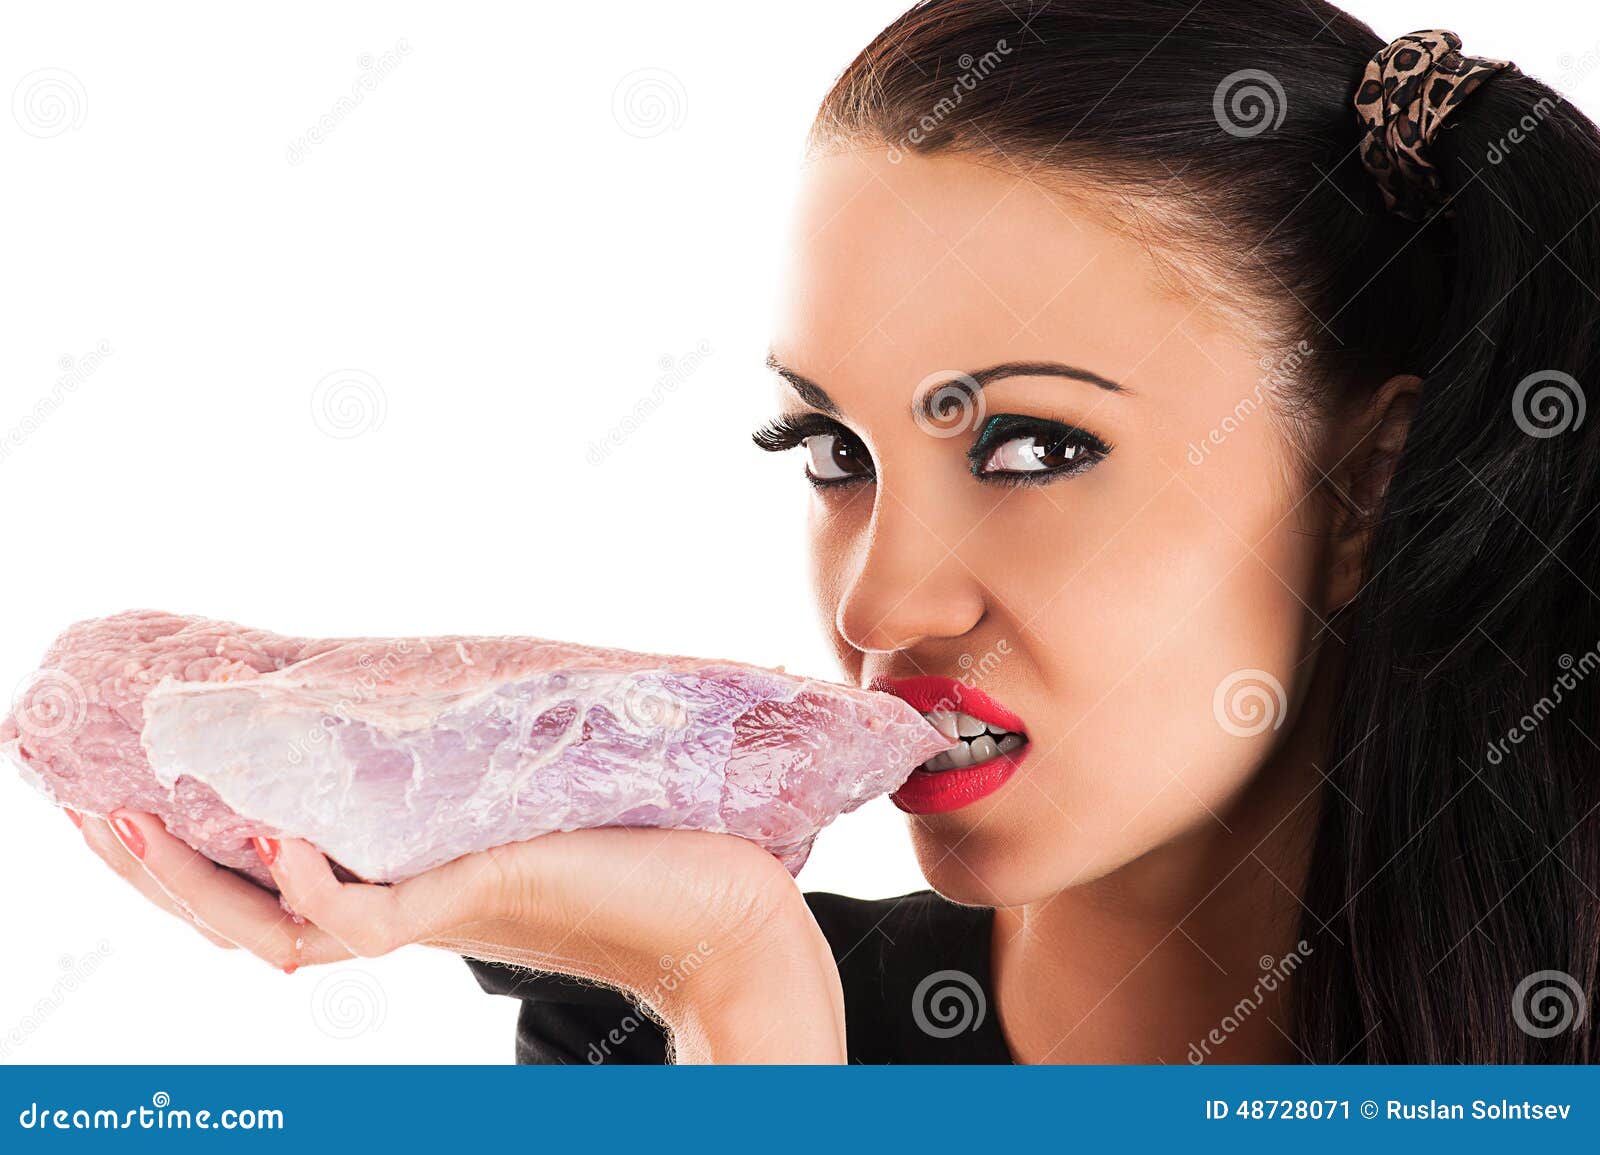 Что будет есть съесть сырое мясо. Женщина ест сырое мясо. Девушка ест сырое мясо. Женщина с мясными продуктами.